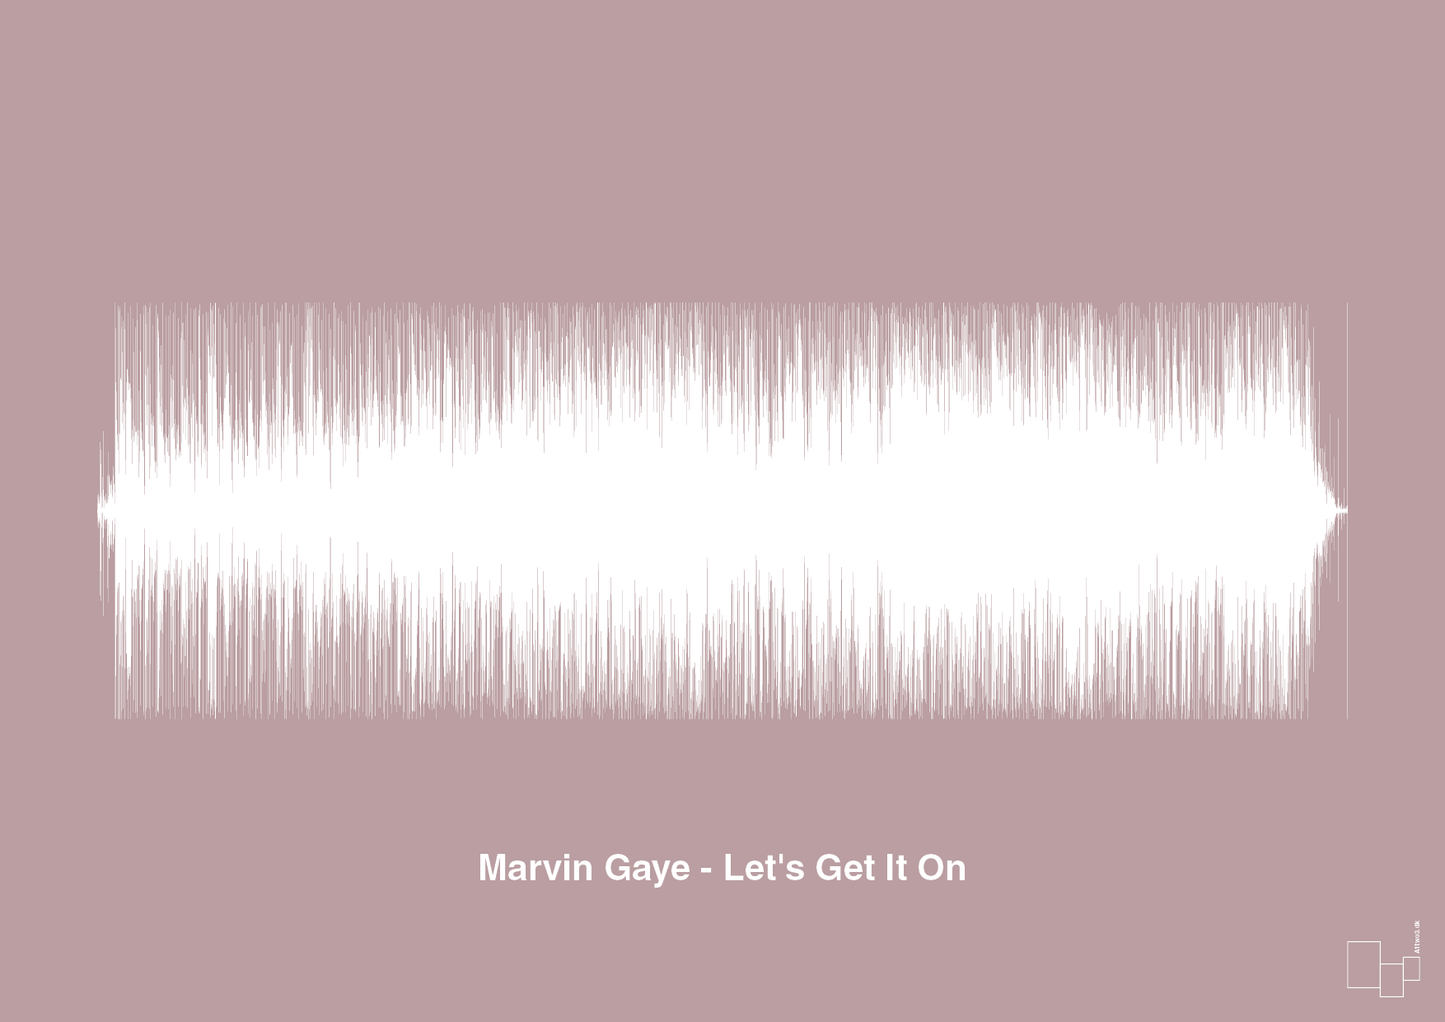 marvin gaye - let's get it on - Plakat med Musik i Light Rose